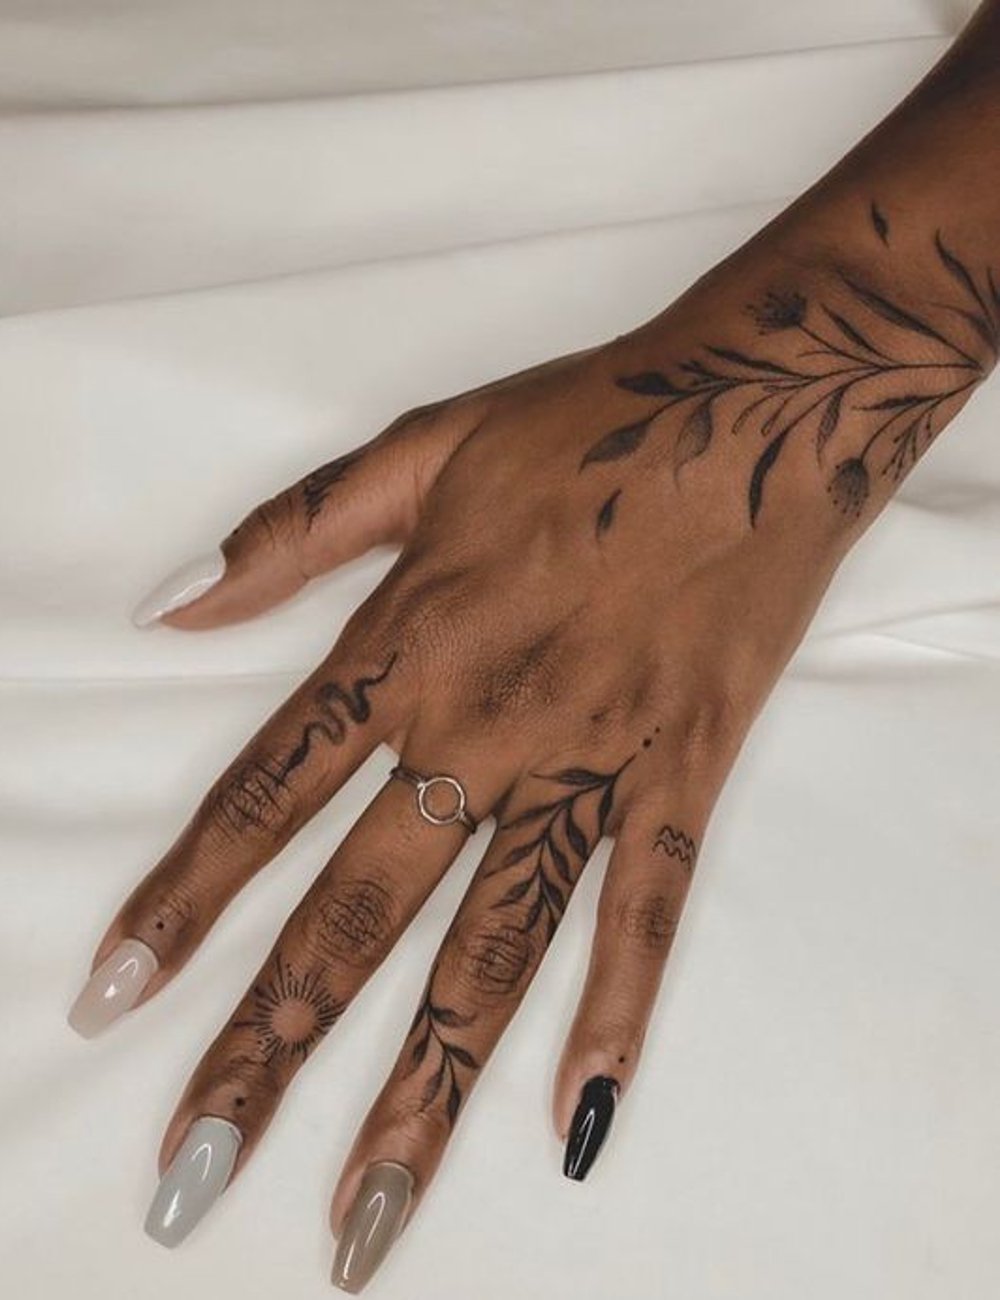 Tatuagem - tattoo - tatuagem em pele negra - pele - corpo - https://stealthelook.com.br